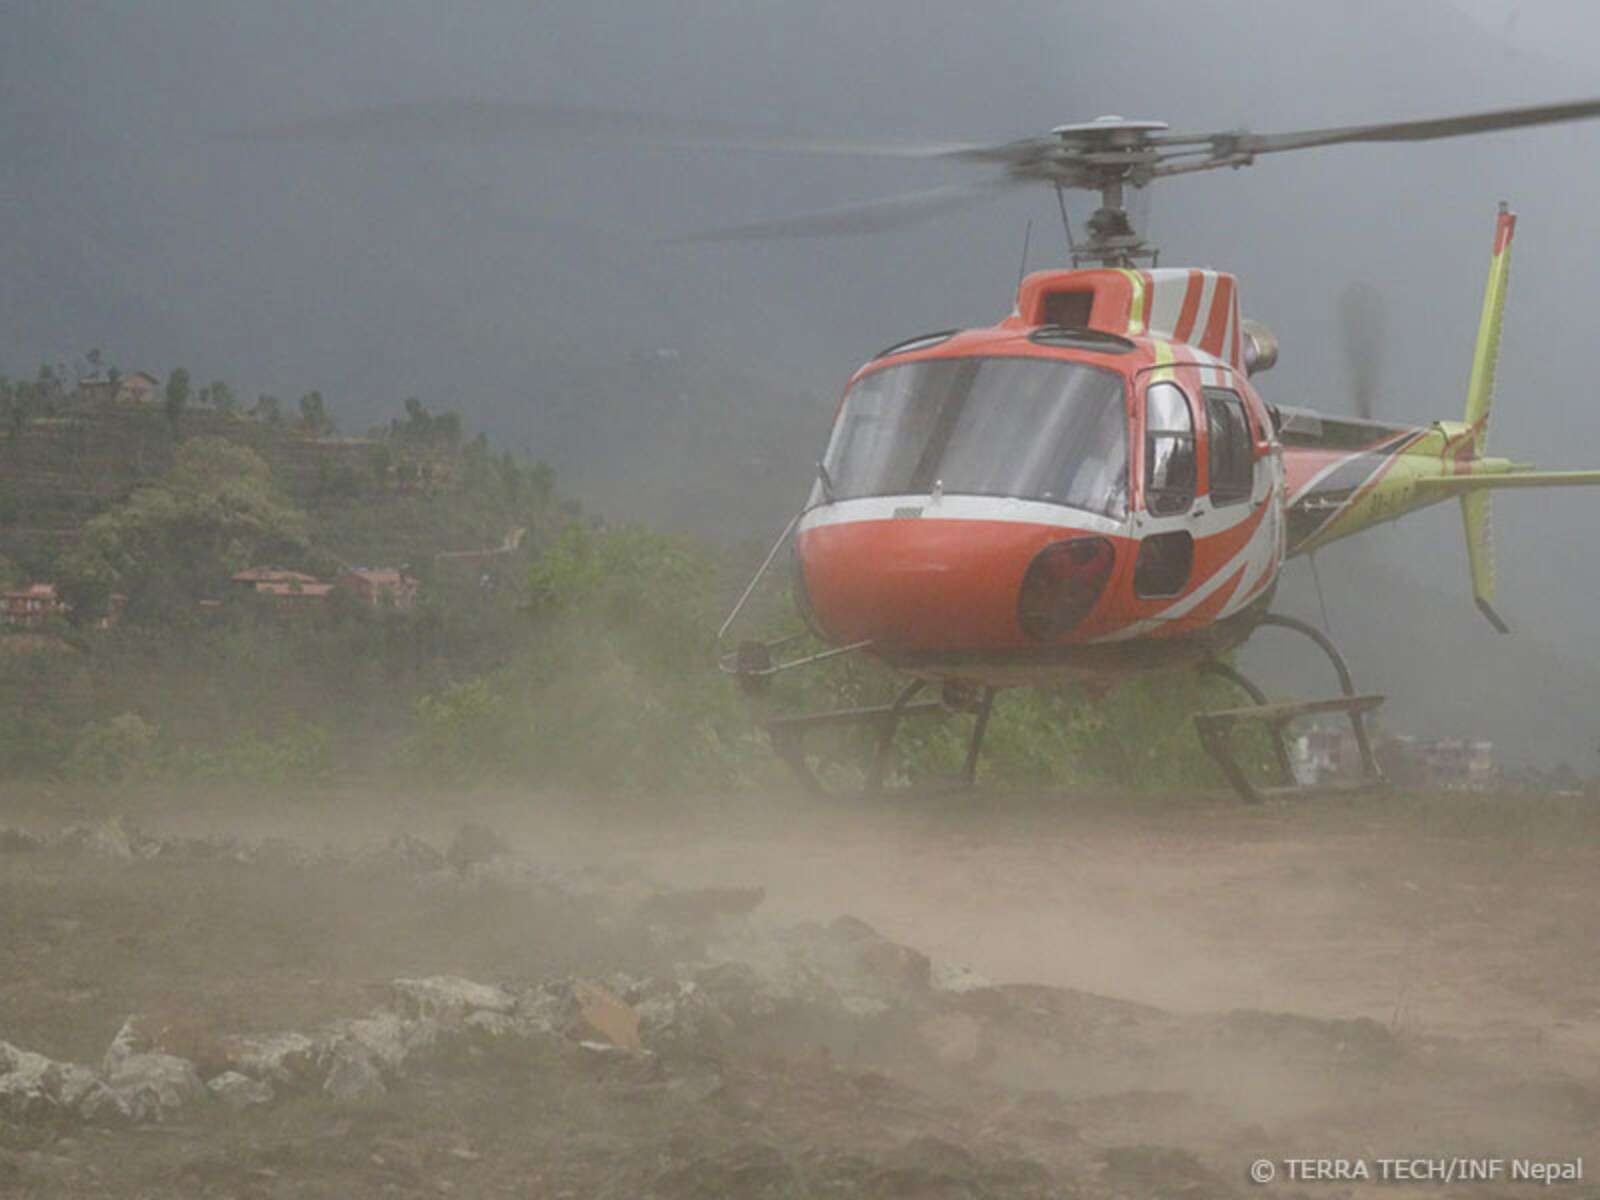 Nothilfepakete werden mit Hubschraubern auch in schwer zugängliche Gebiete transportiert. Zudem werden Verletzte aus den Katastrophengebieten in Kliniken und Krankenhäuser ausgeflogen